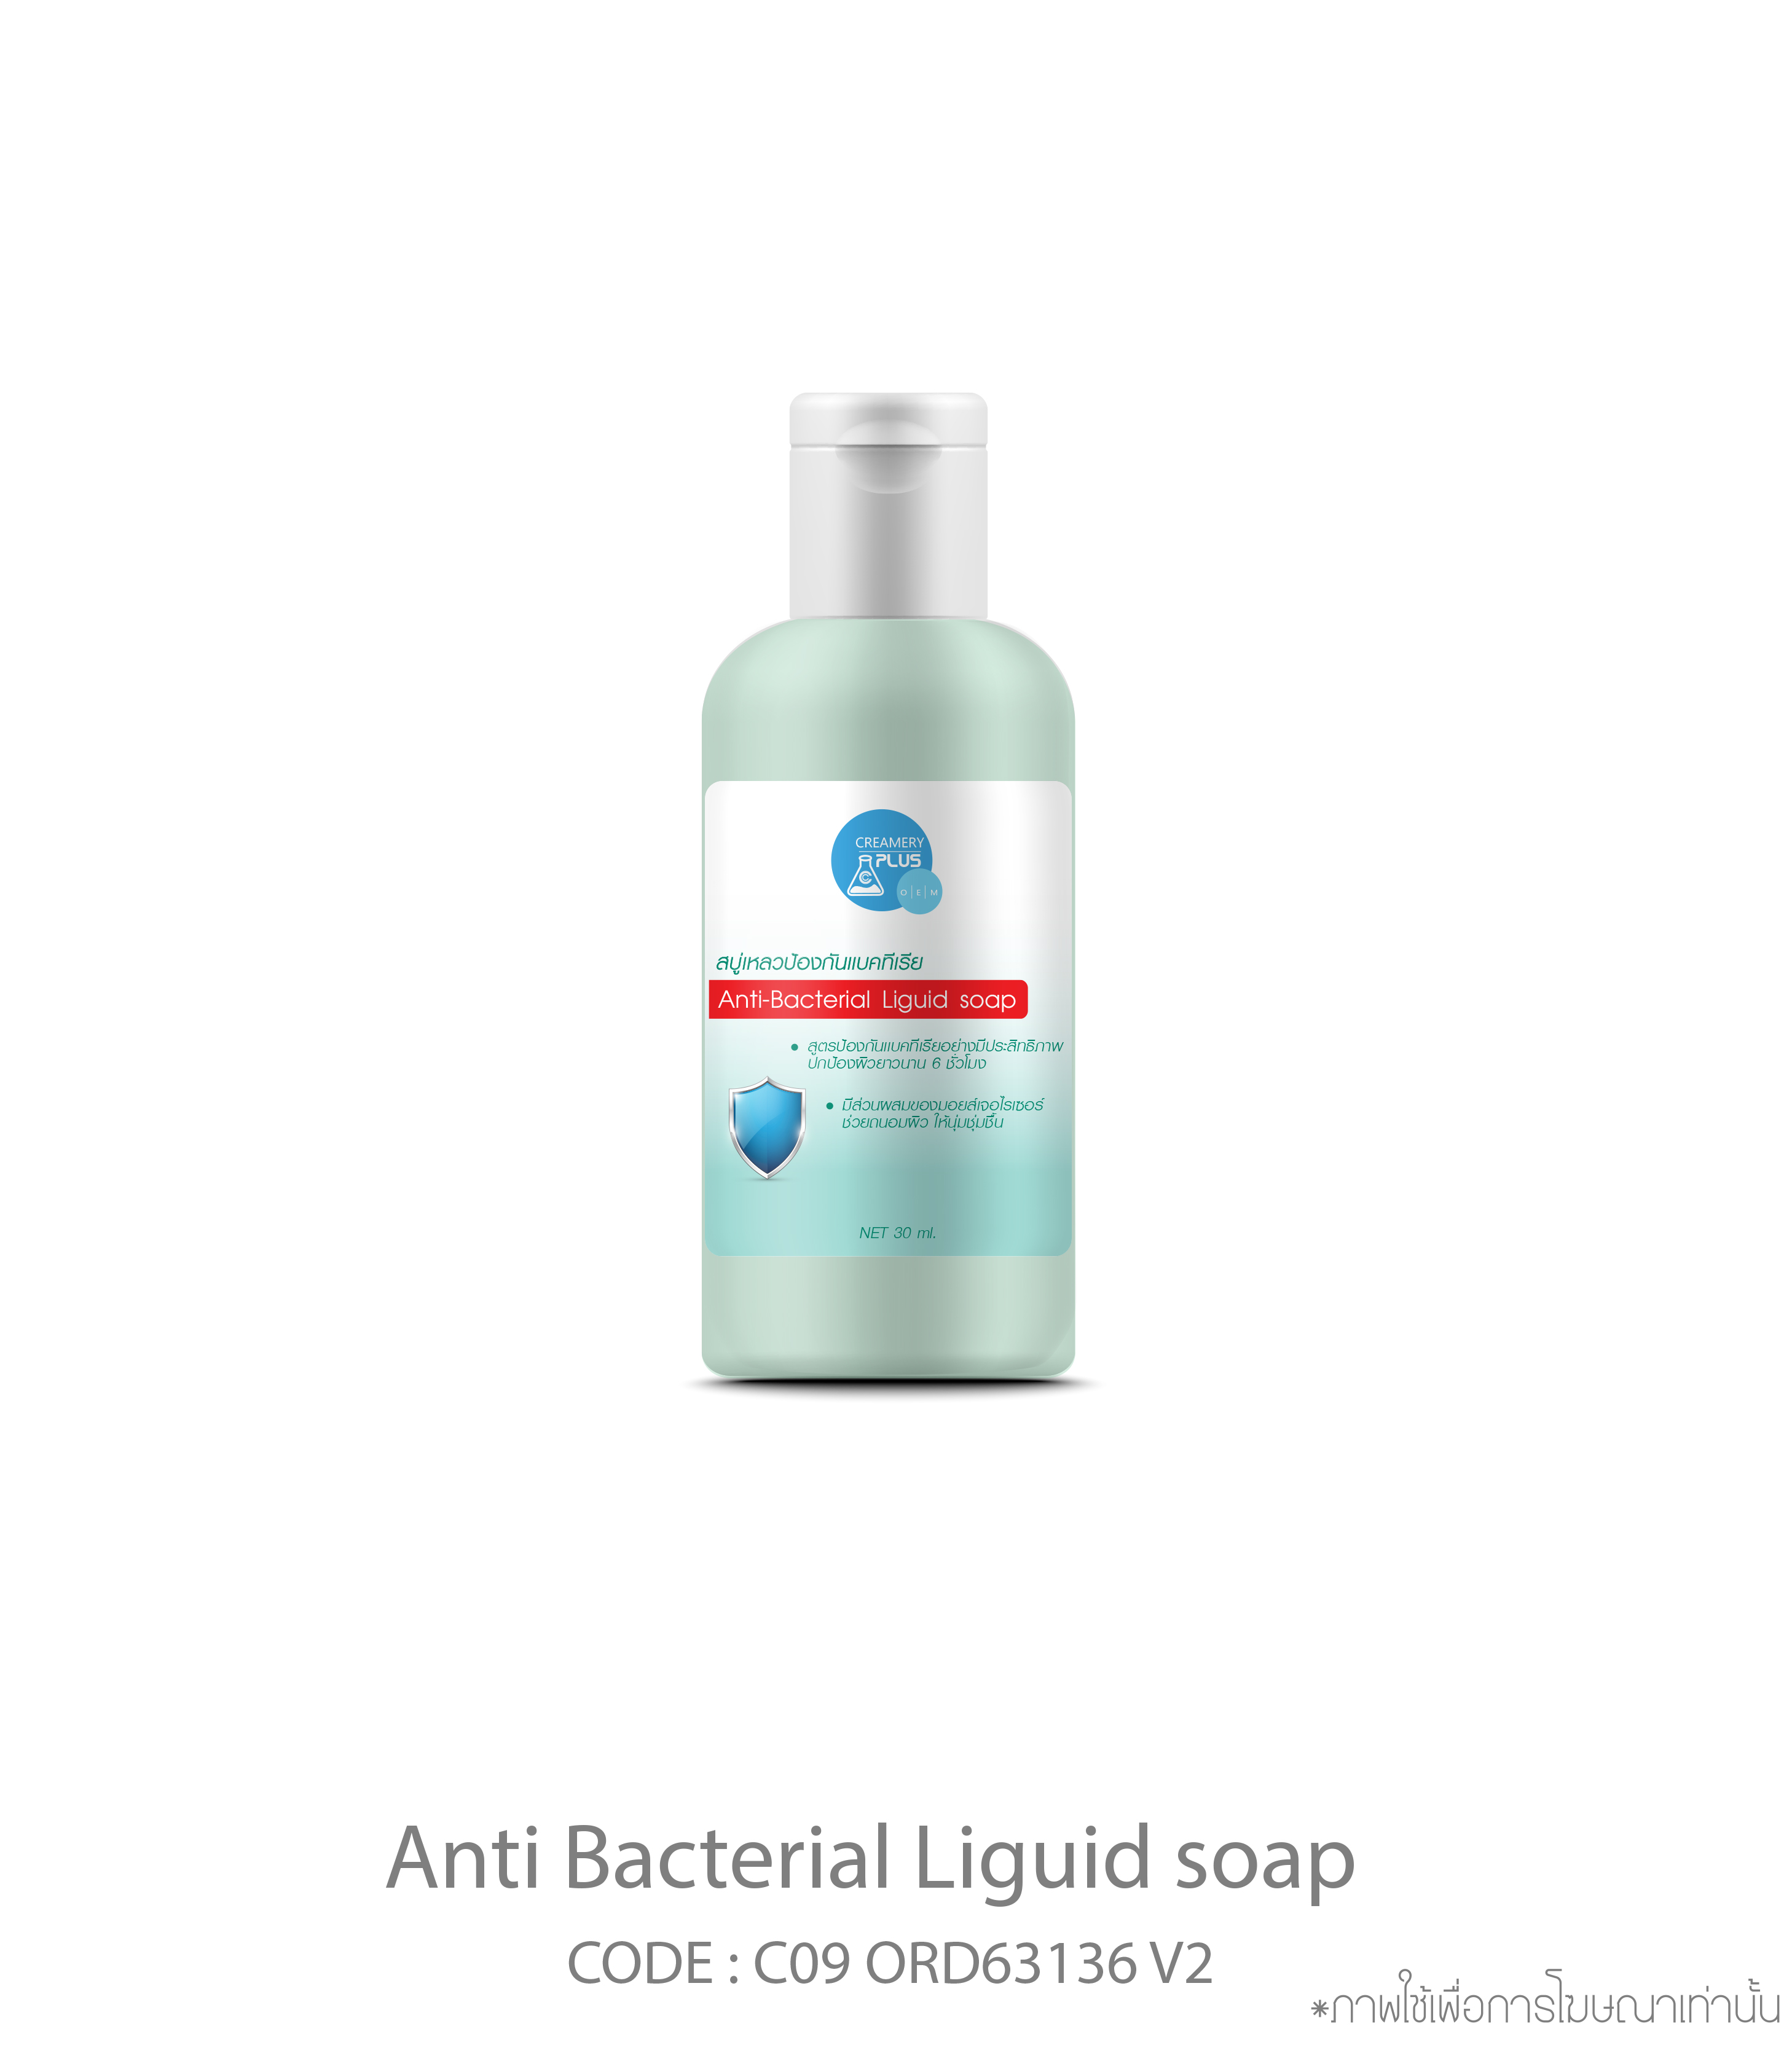 Anti-Bacterial Liquid Soap